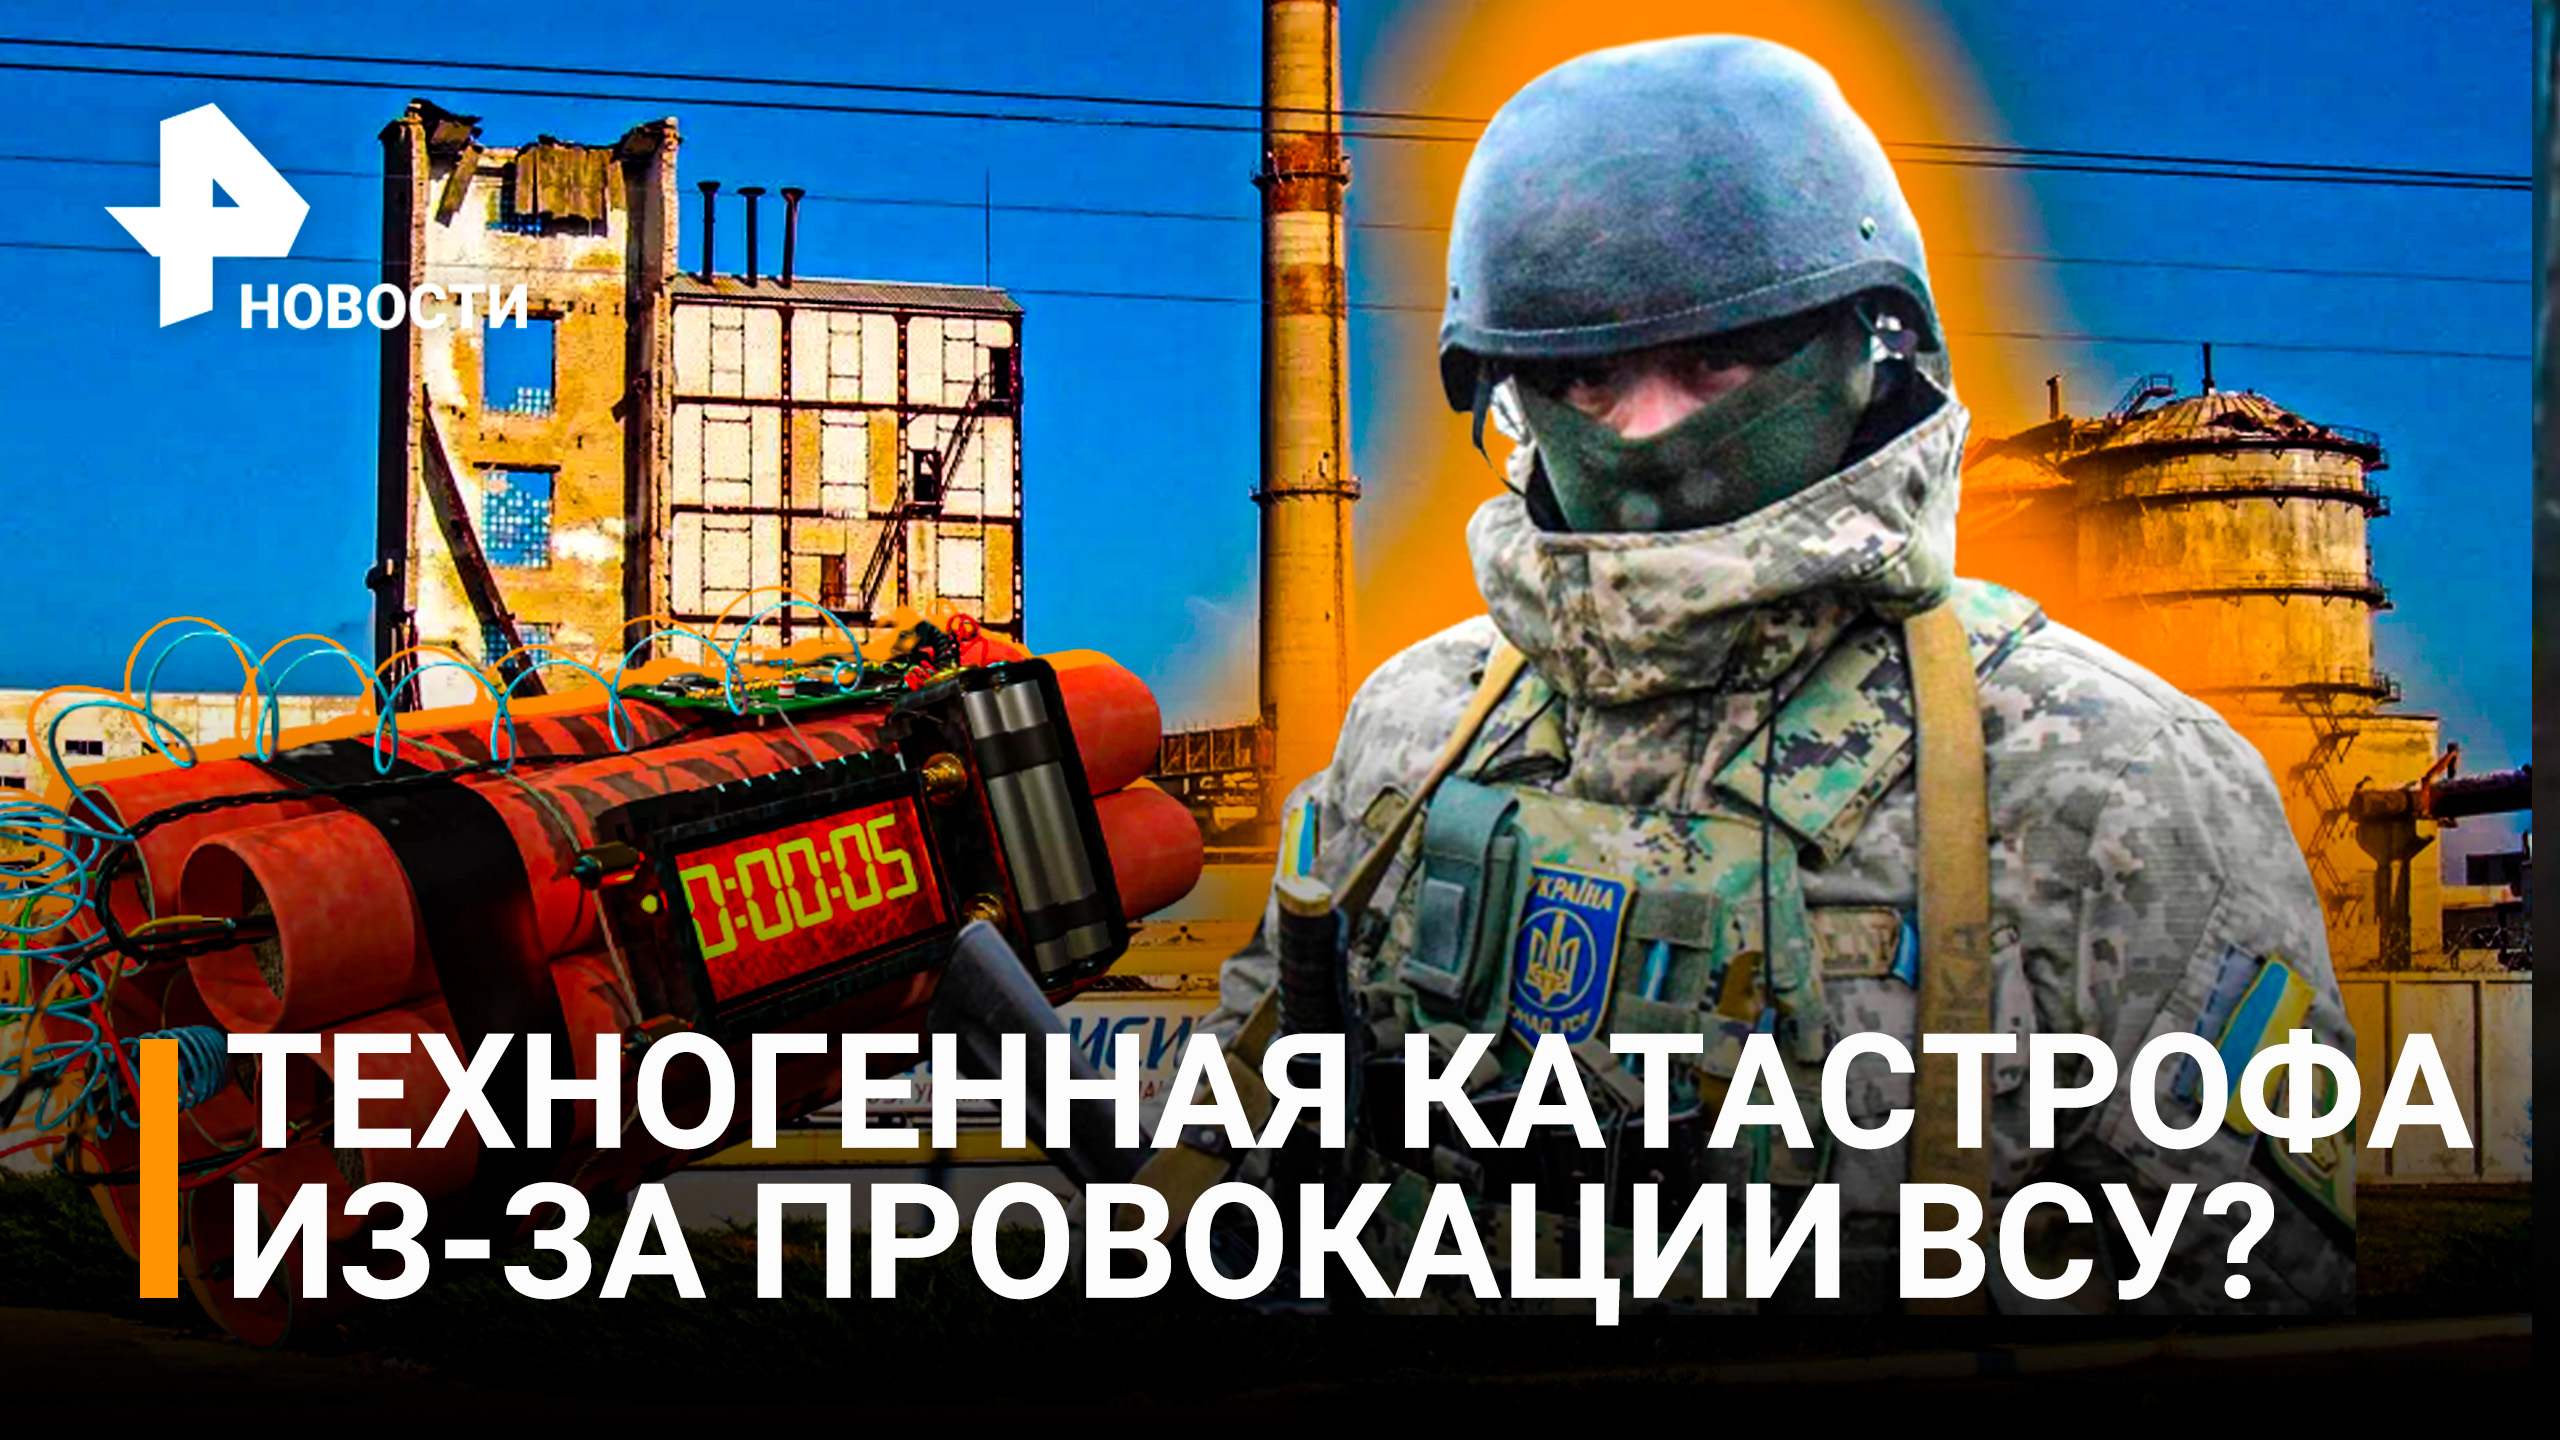 Жестокая провокация украинских националистов приведет к техногенной катастрофе? / РЕН Новости